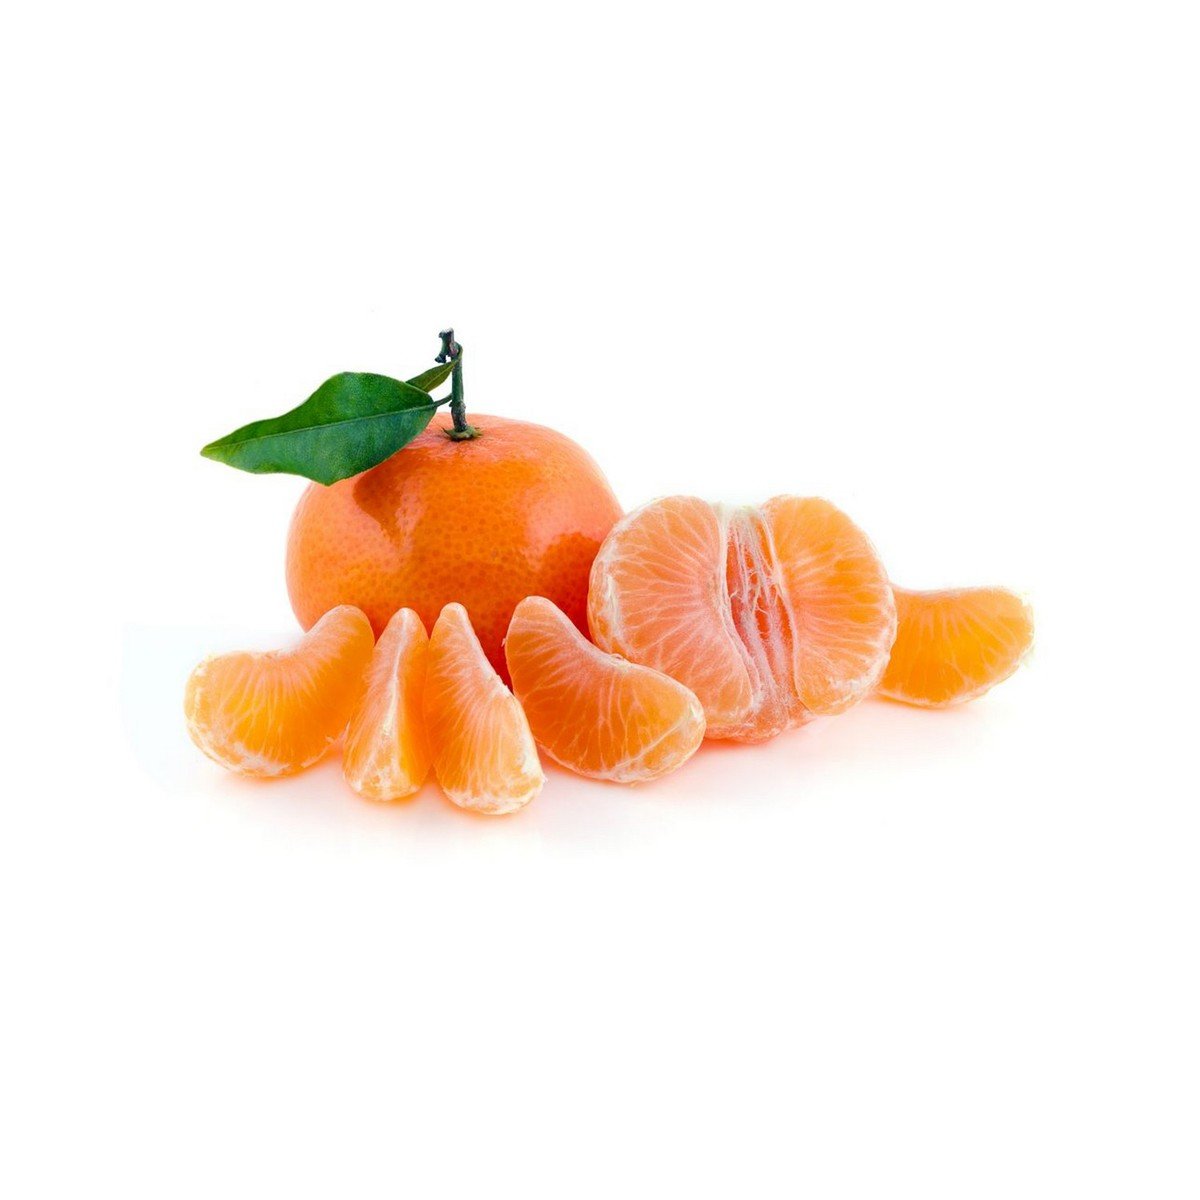 Mandarin Spain 1 kg